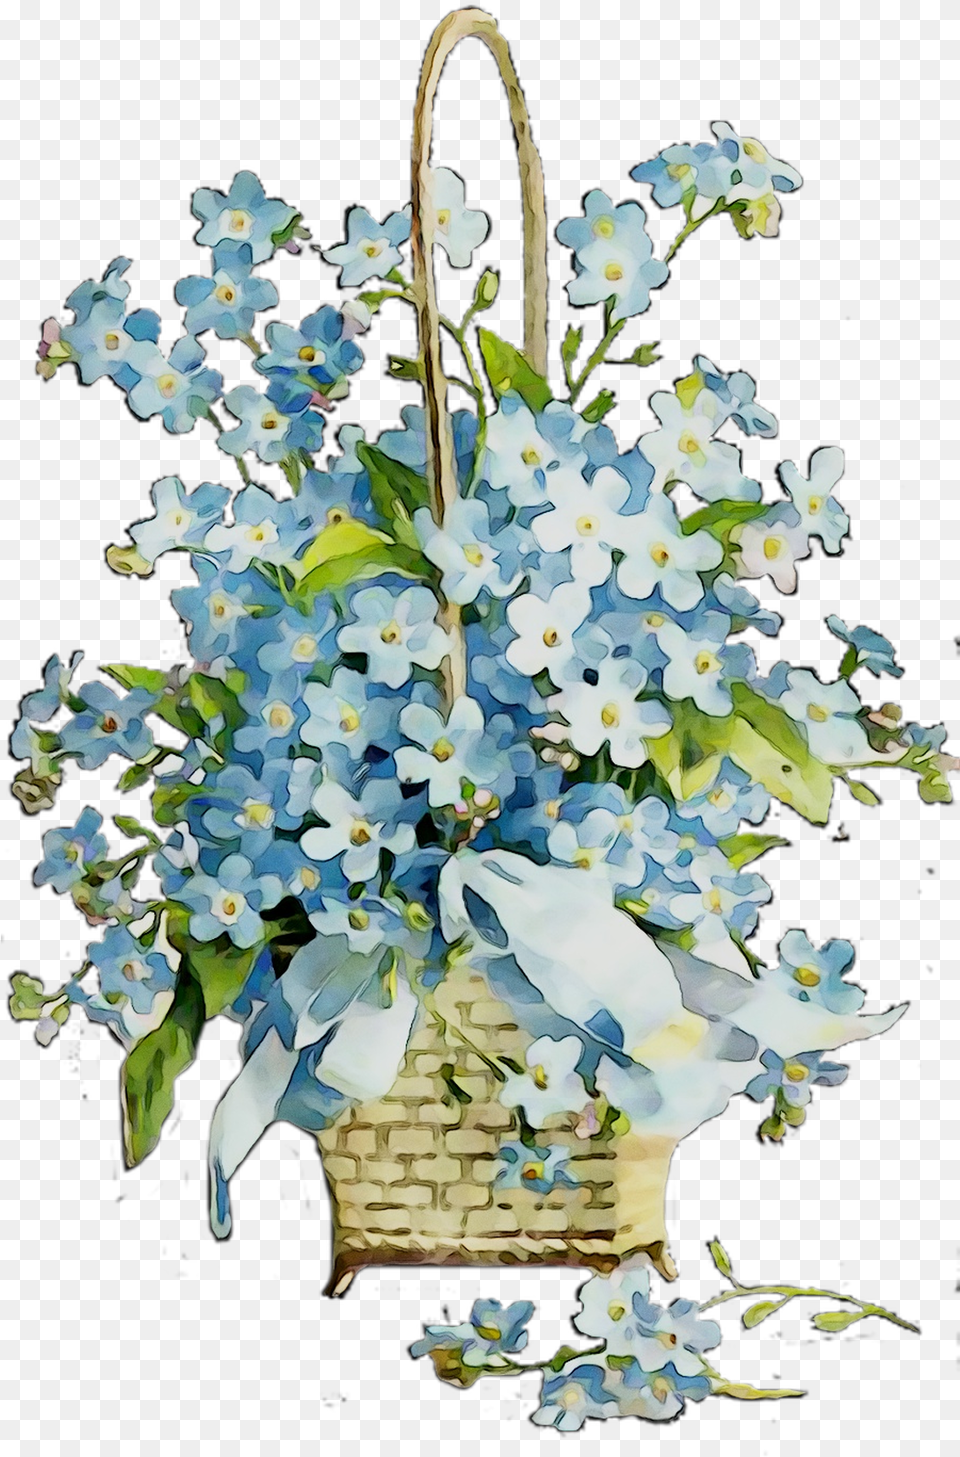 Flower Bouquet Victorian Cut Design Era Floral Clipart Rosa Glauca, Basket, Flower Arrangement, Plant, Petal Png Image